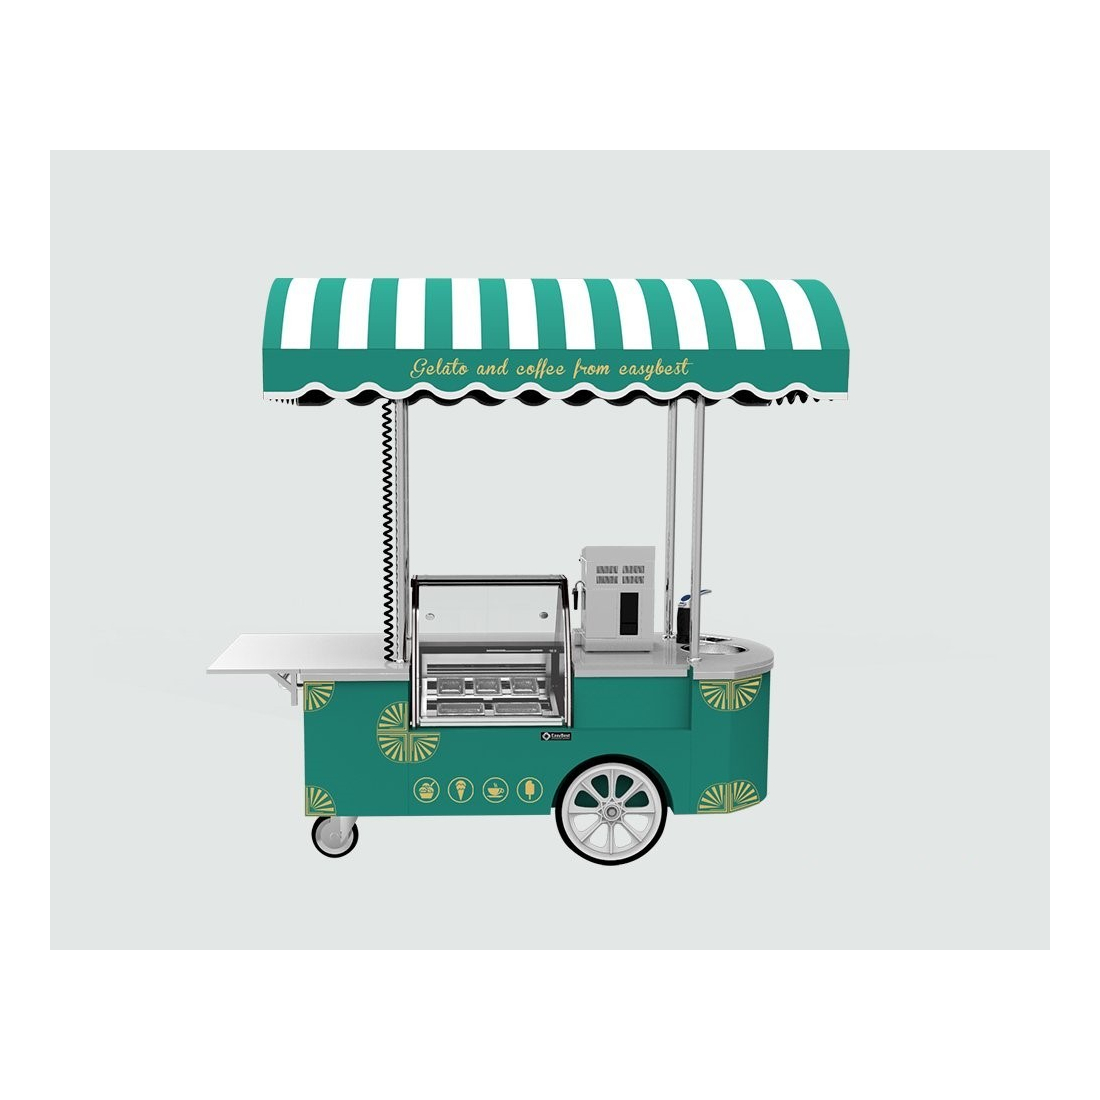 عربة عرض حلويات ,IC CART5, من ايزي بست|mkayn|مكاين